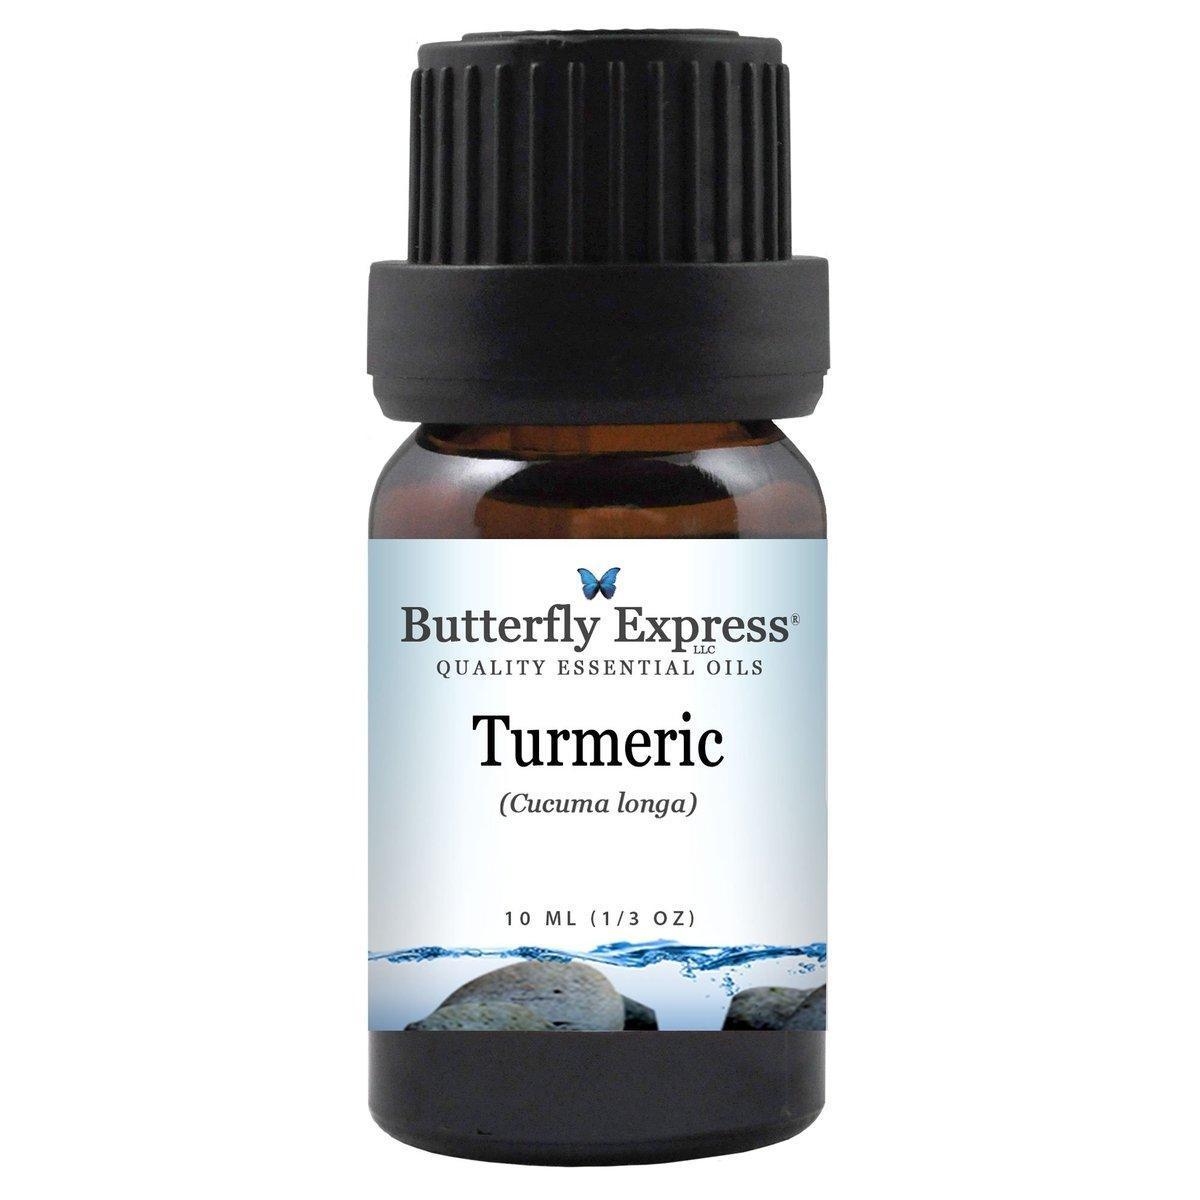 Turmeric essential oils